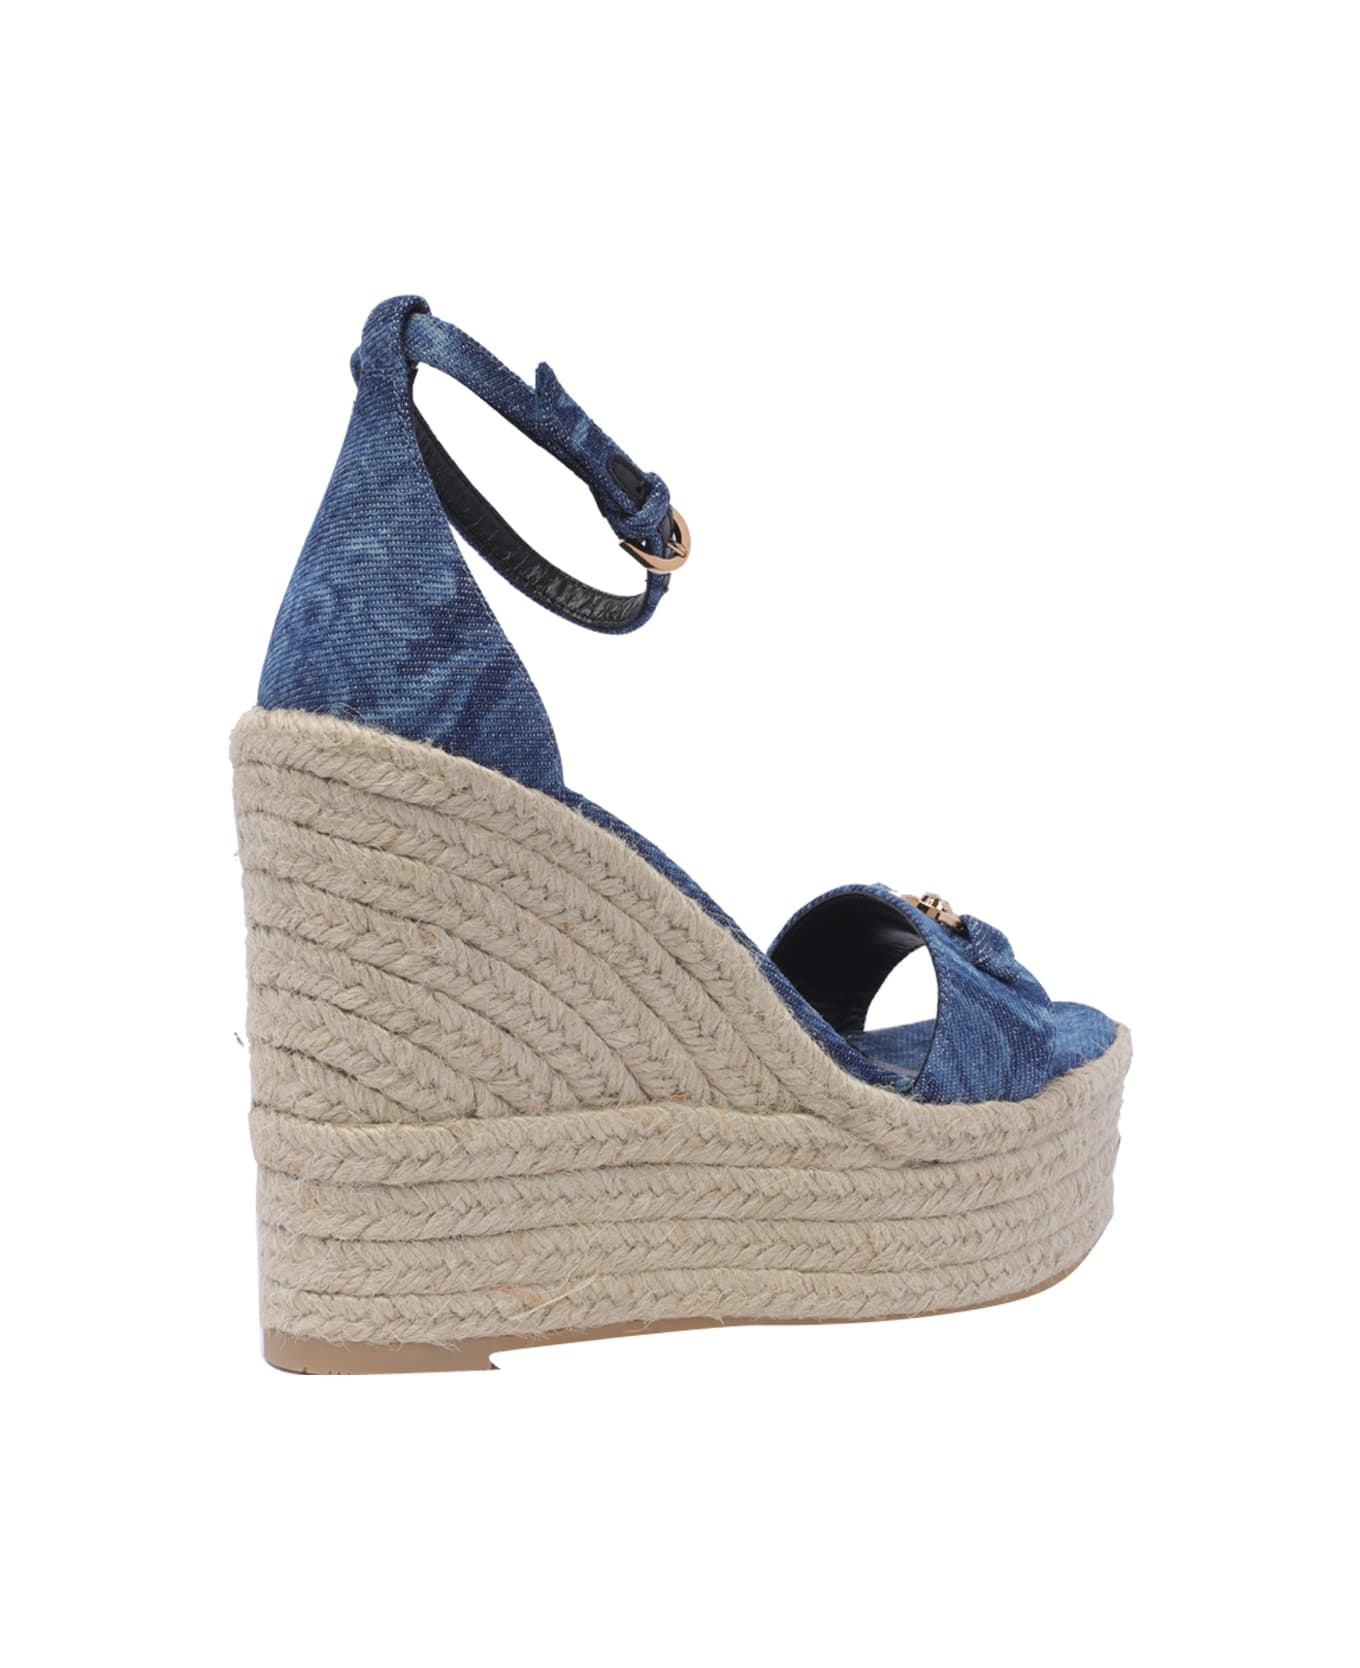 Versace Denim Wedge Sandals 120 - Blue